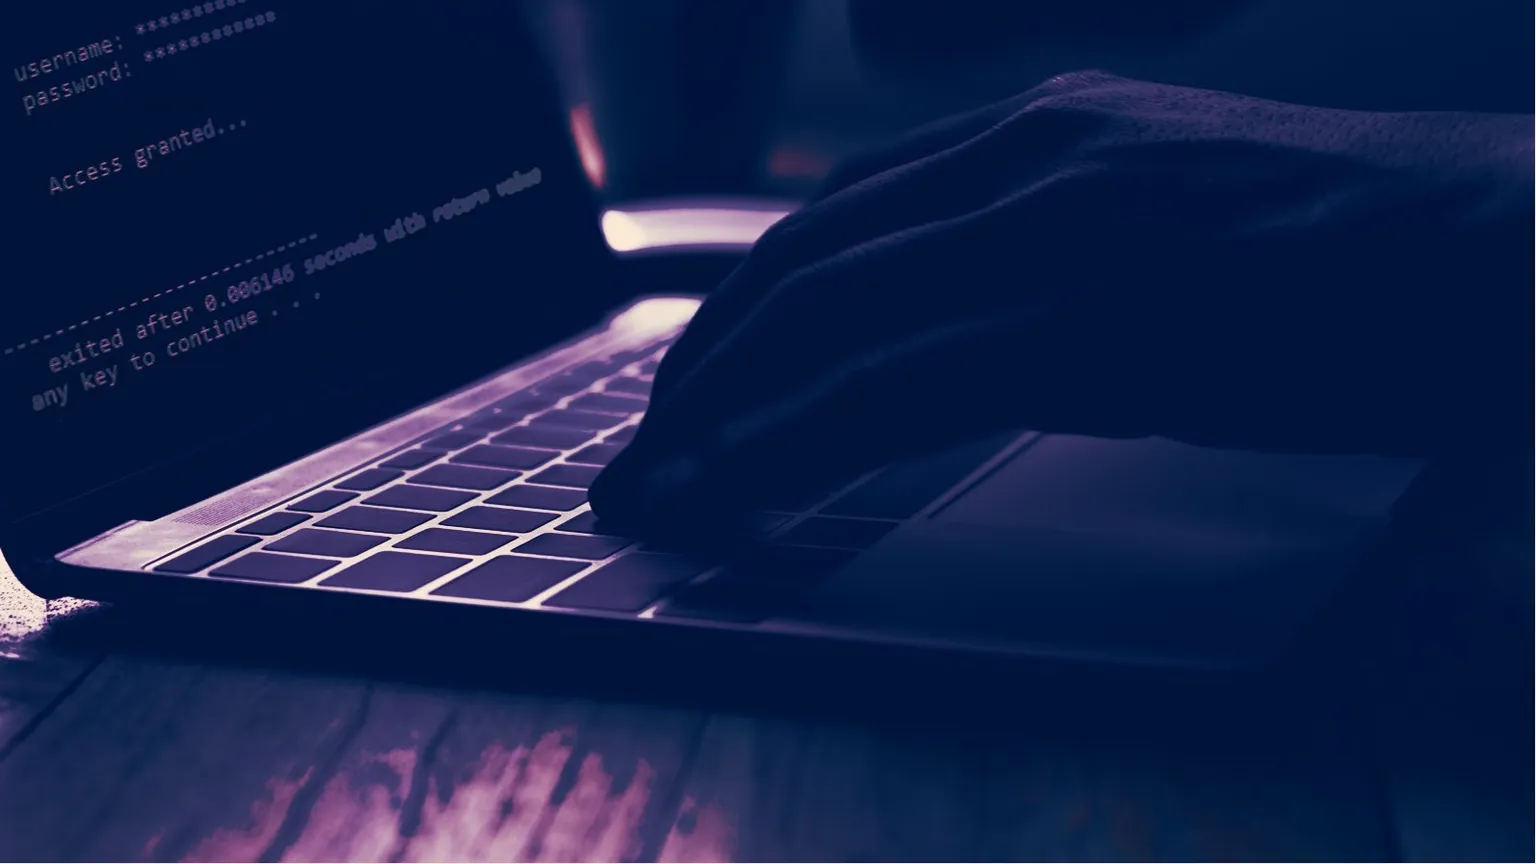 Los hackeos siguen siendo un problema para la industria de criptomonedas. Imagen: Shutterstock